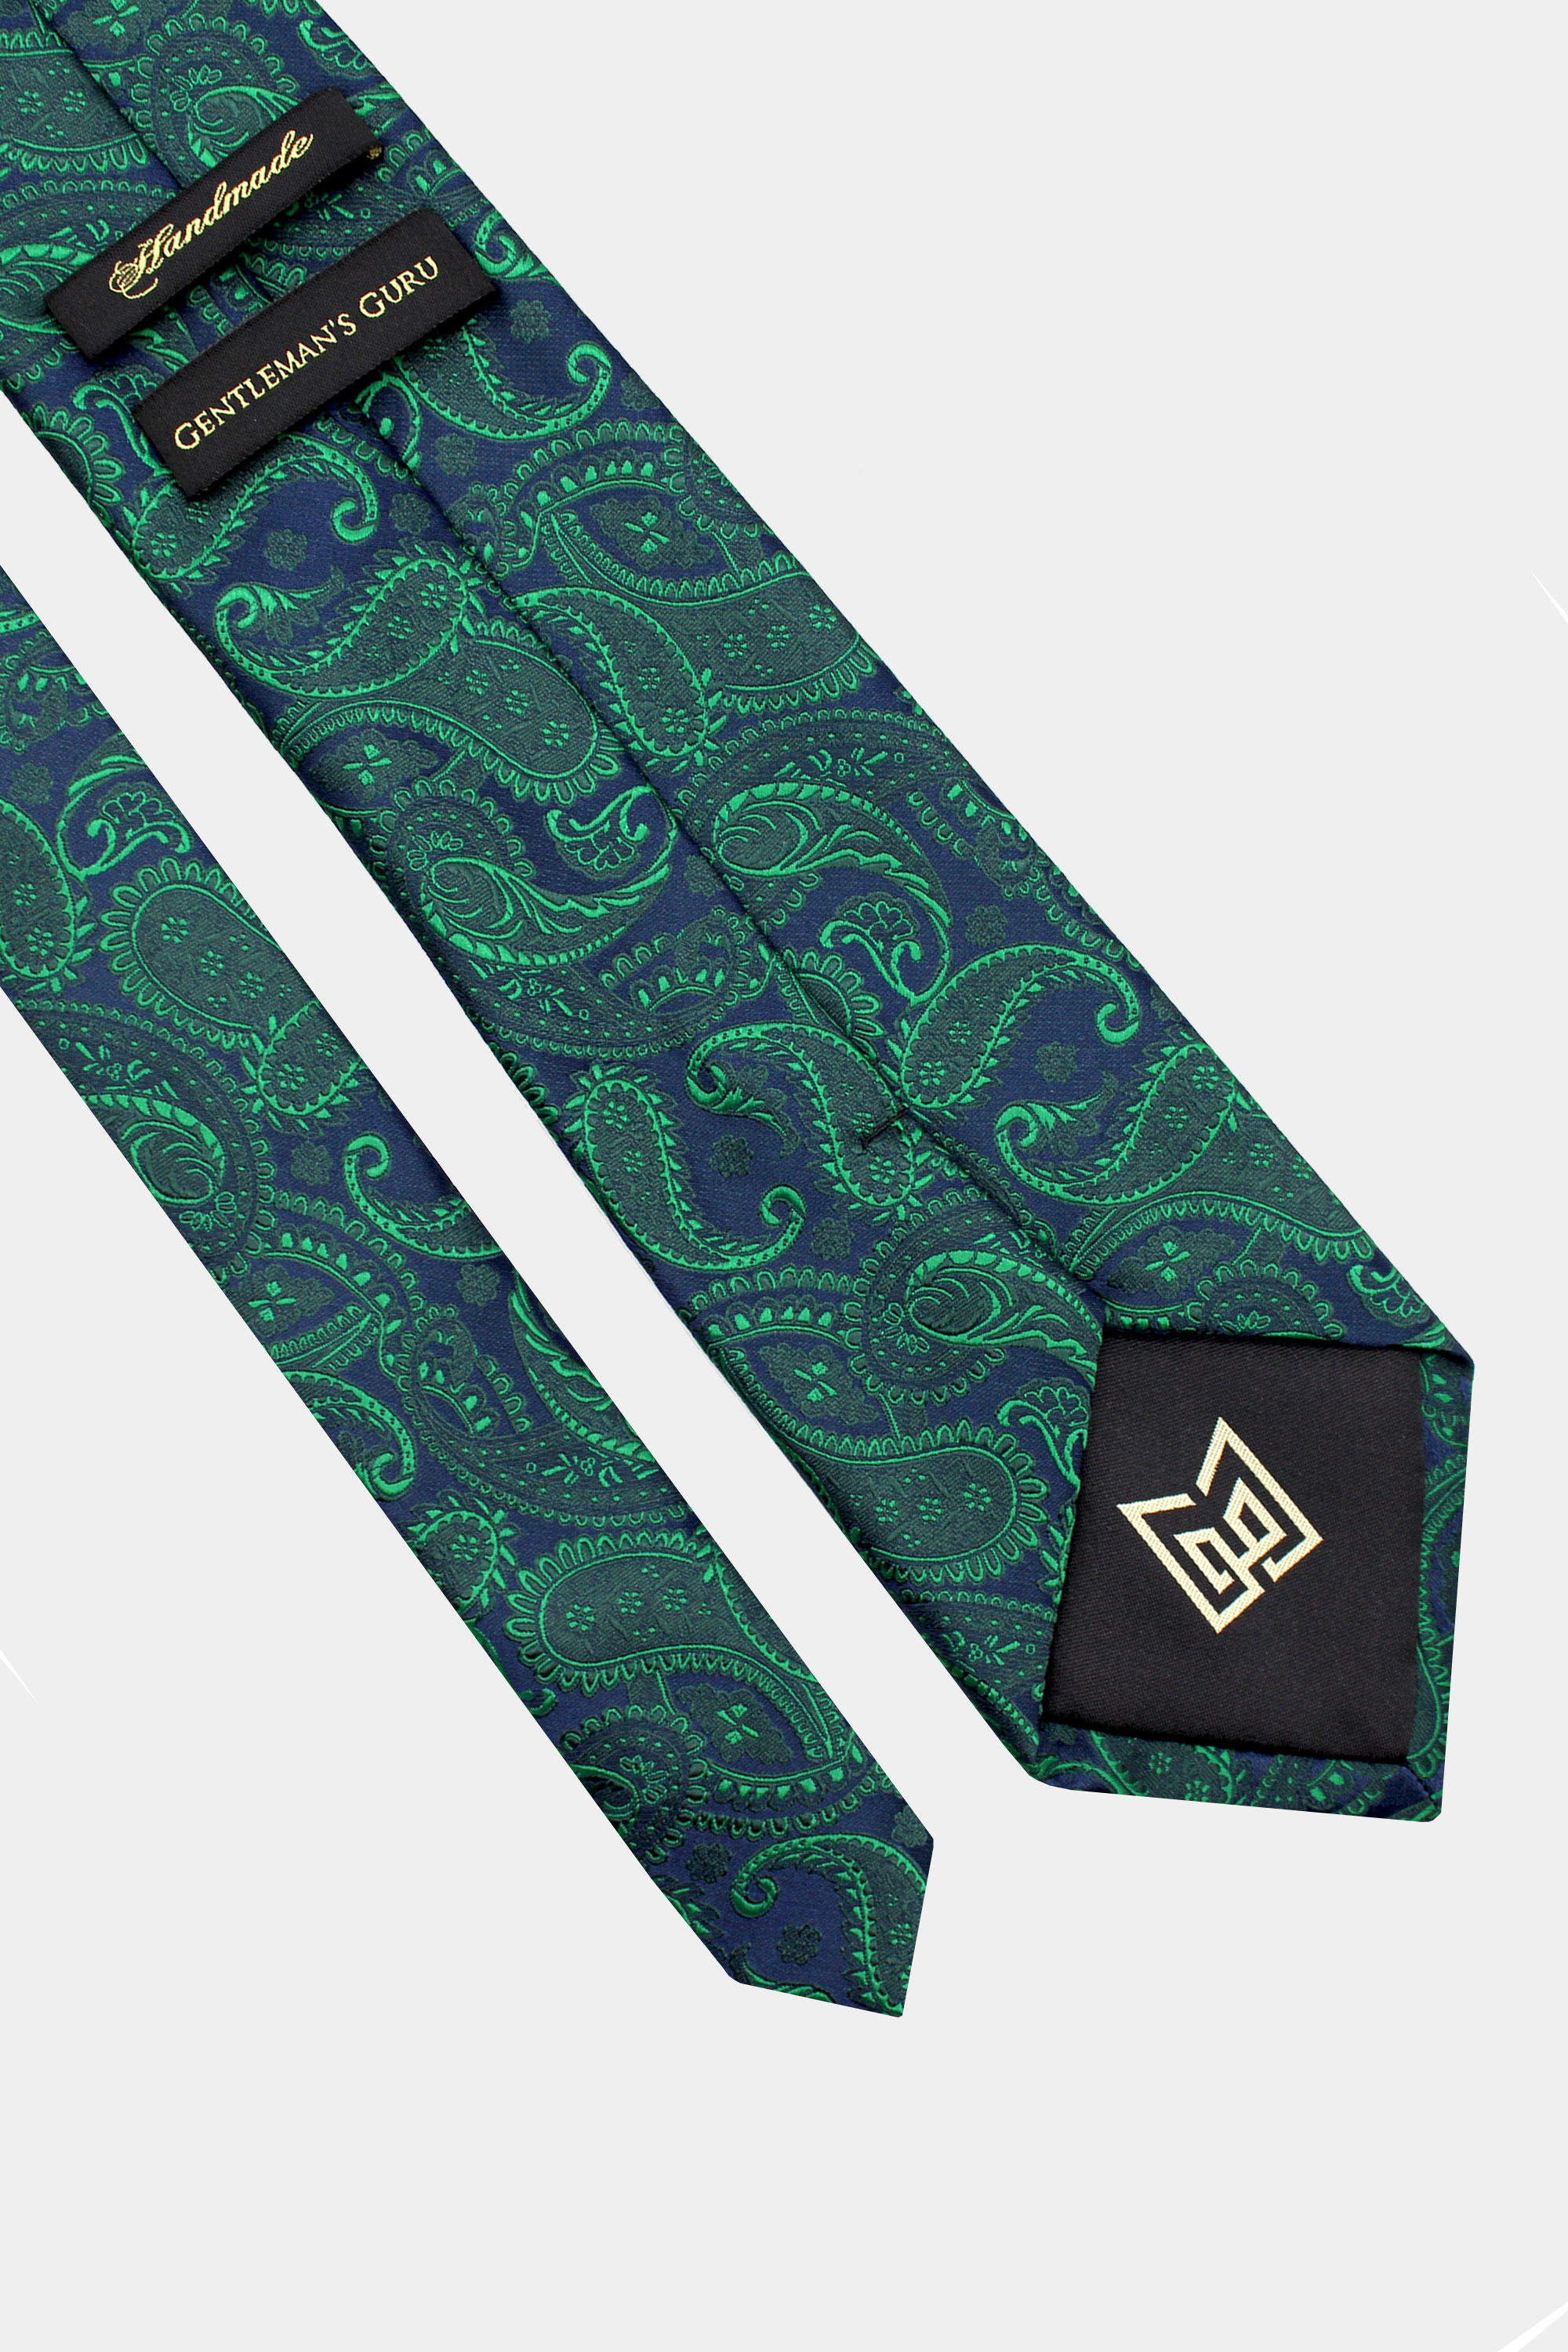 Green-Paisley-Necktie-from-Gentlemansguru.com